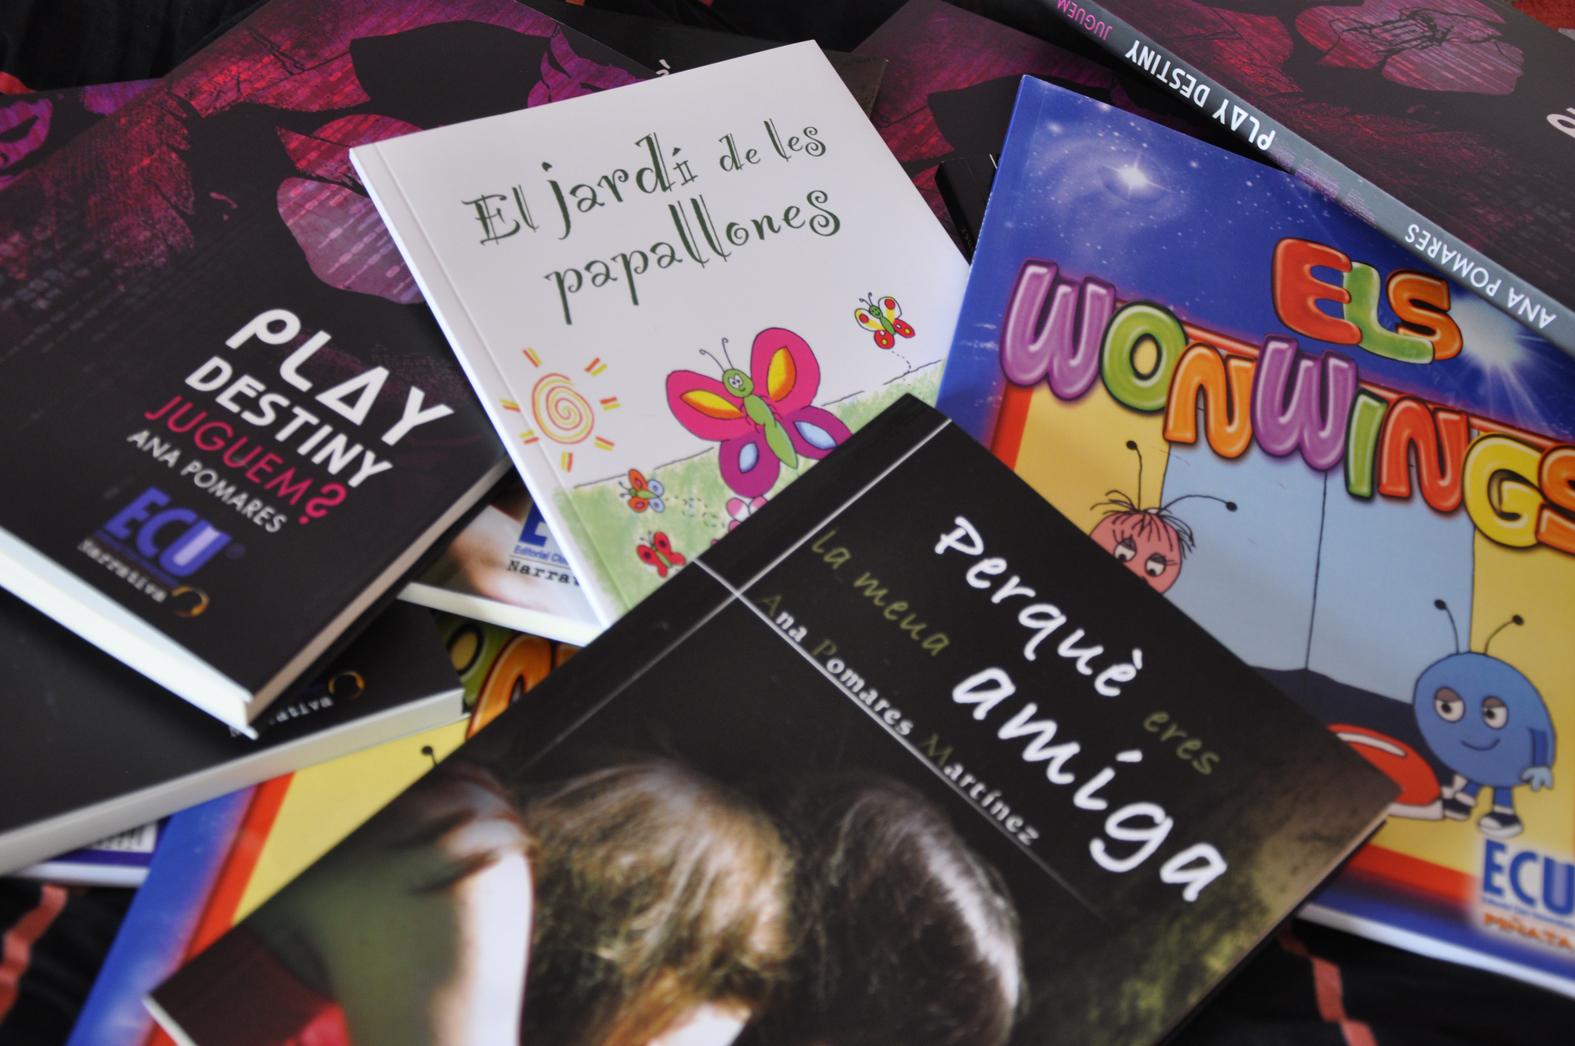 Los libros infantiles y juveniles de Ana Pomares en valenciano